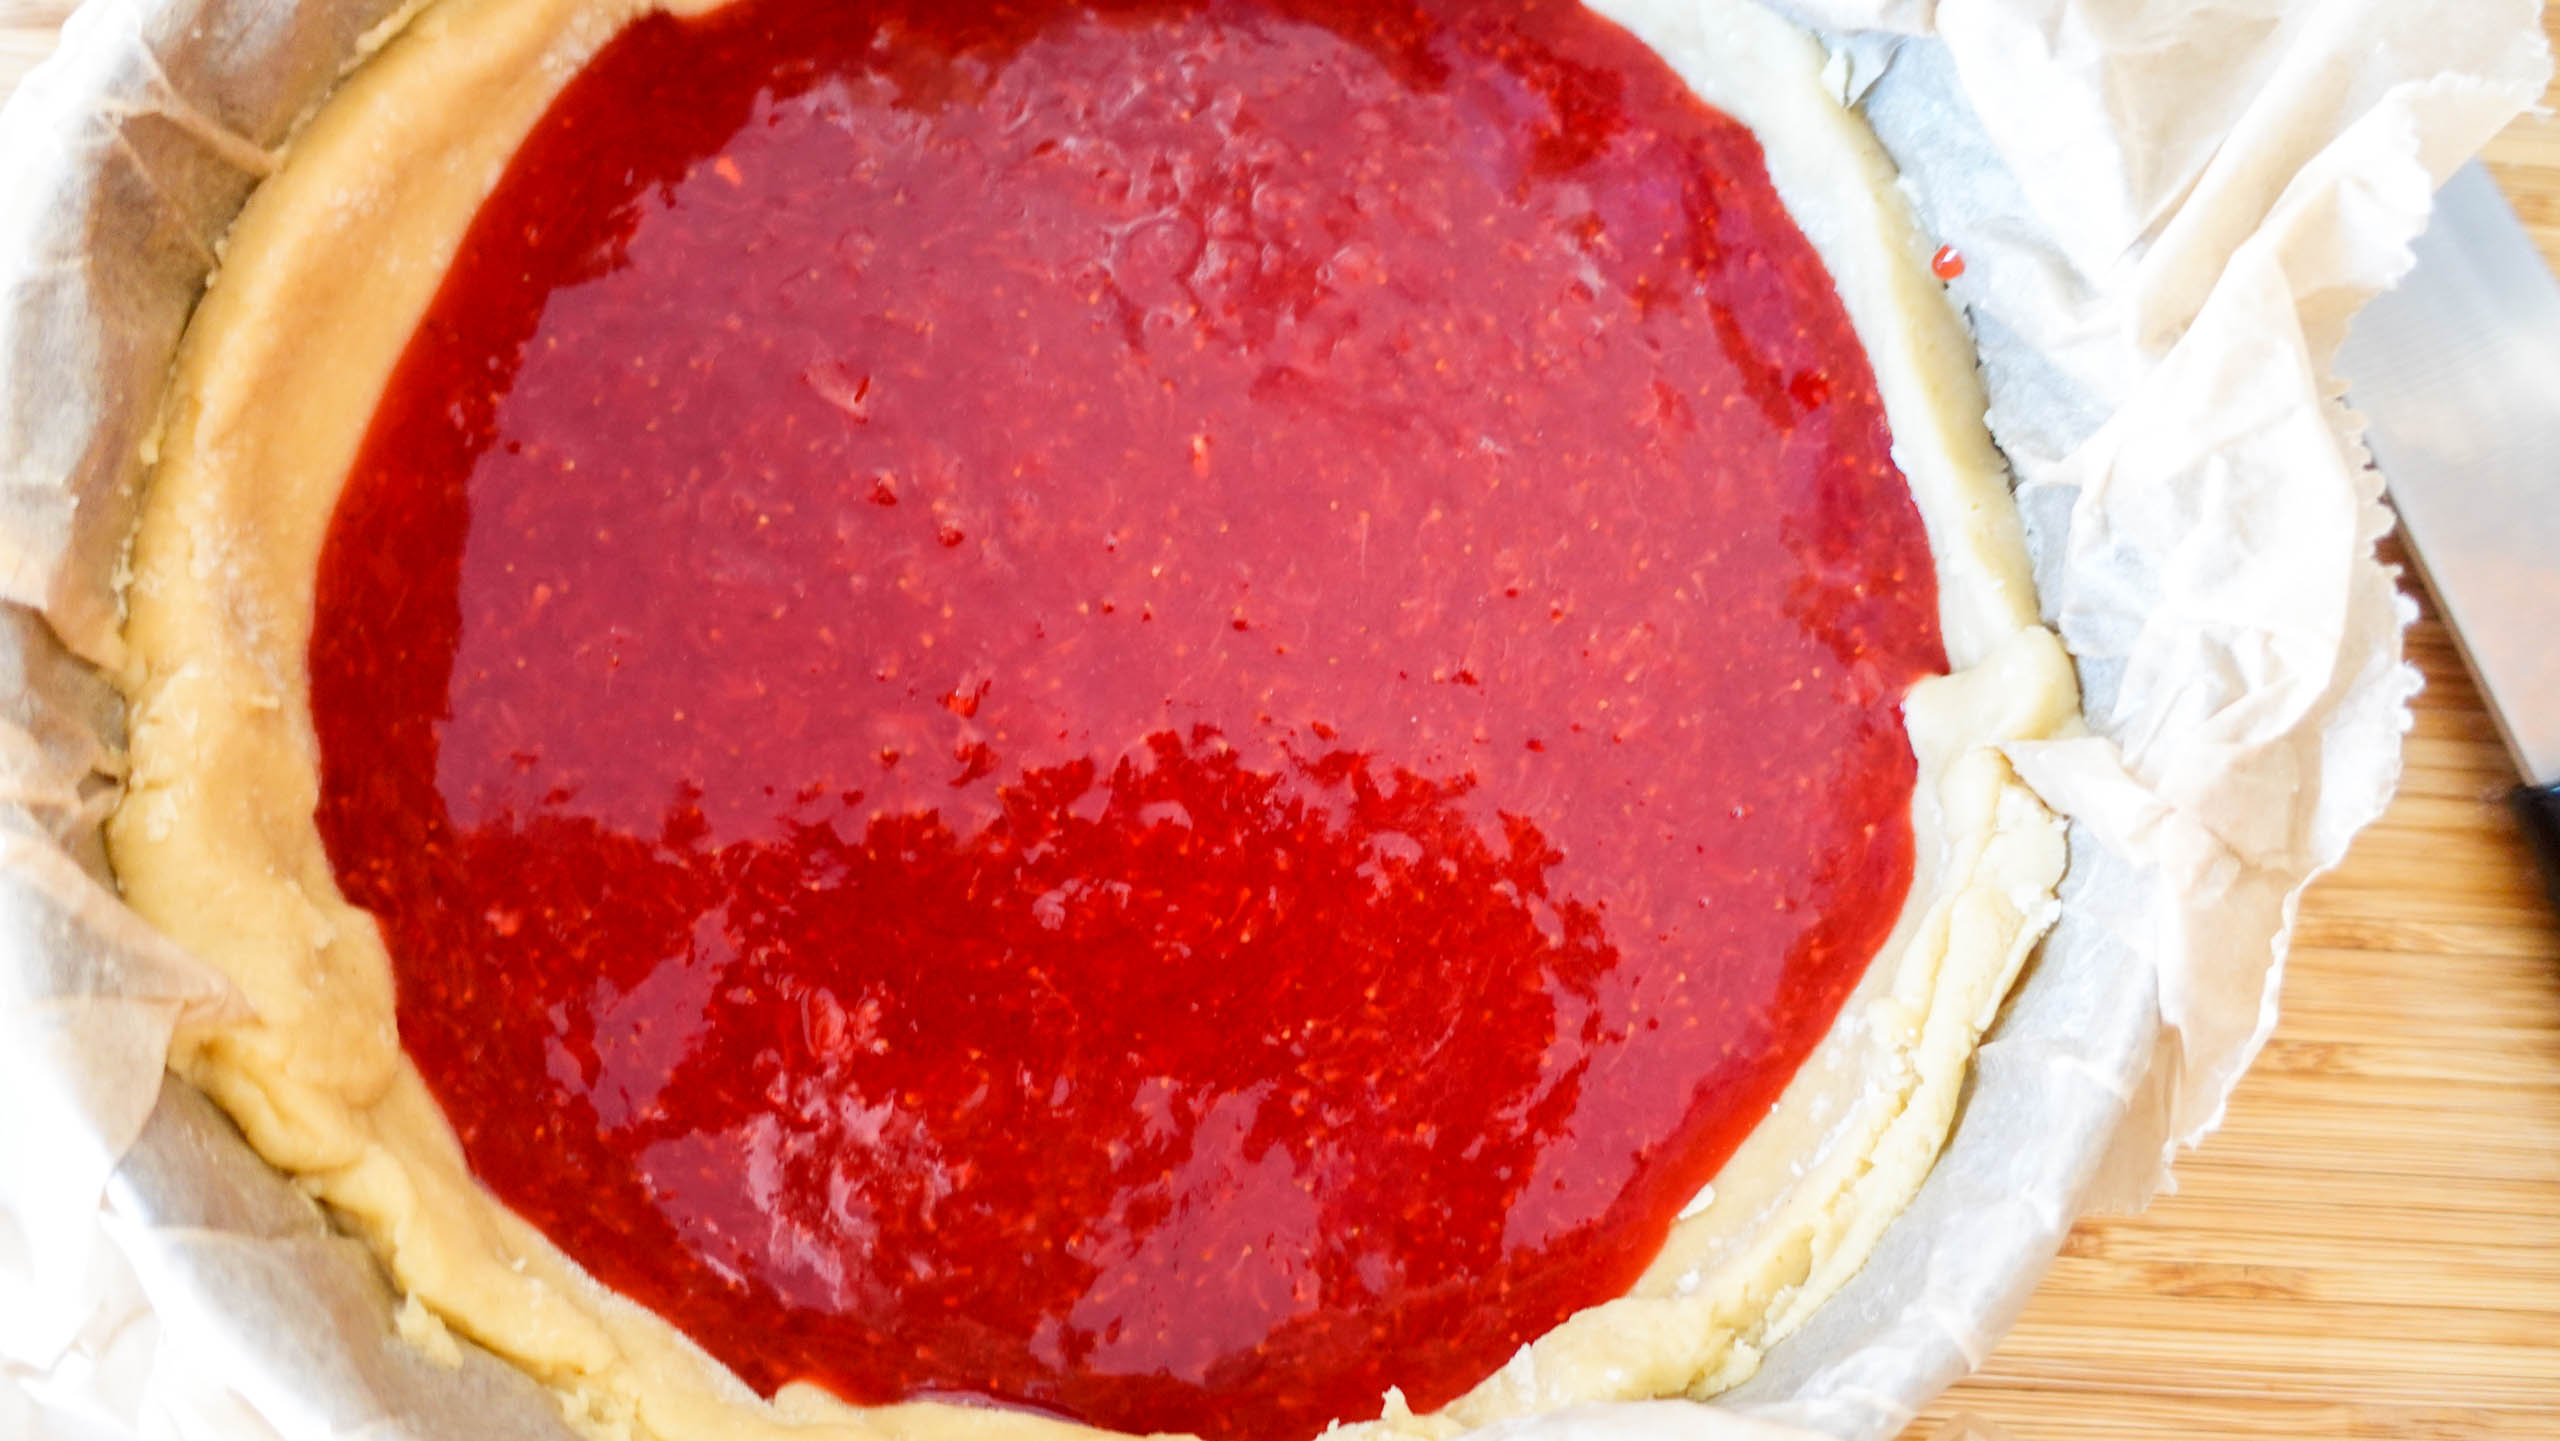 Strawberry pie with jam inside